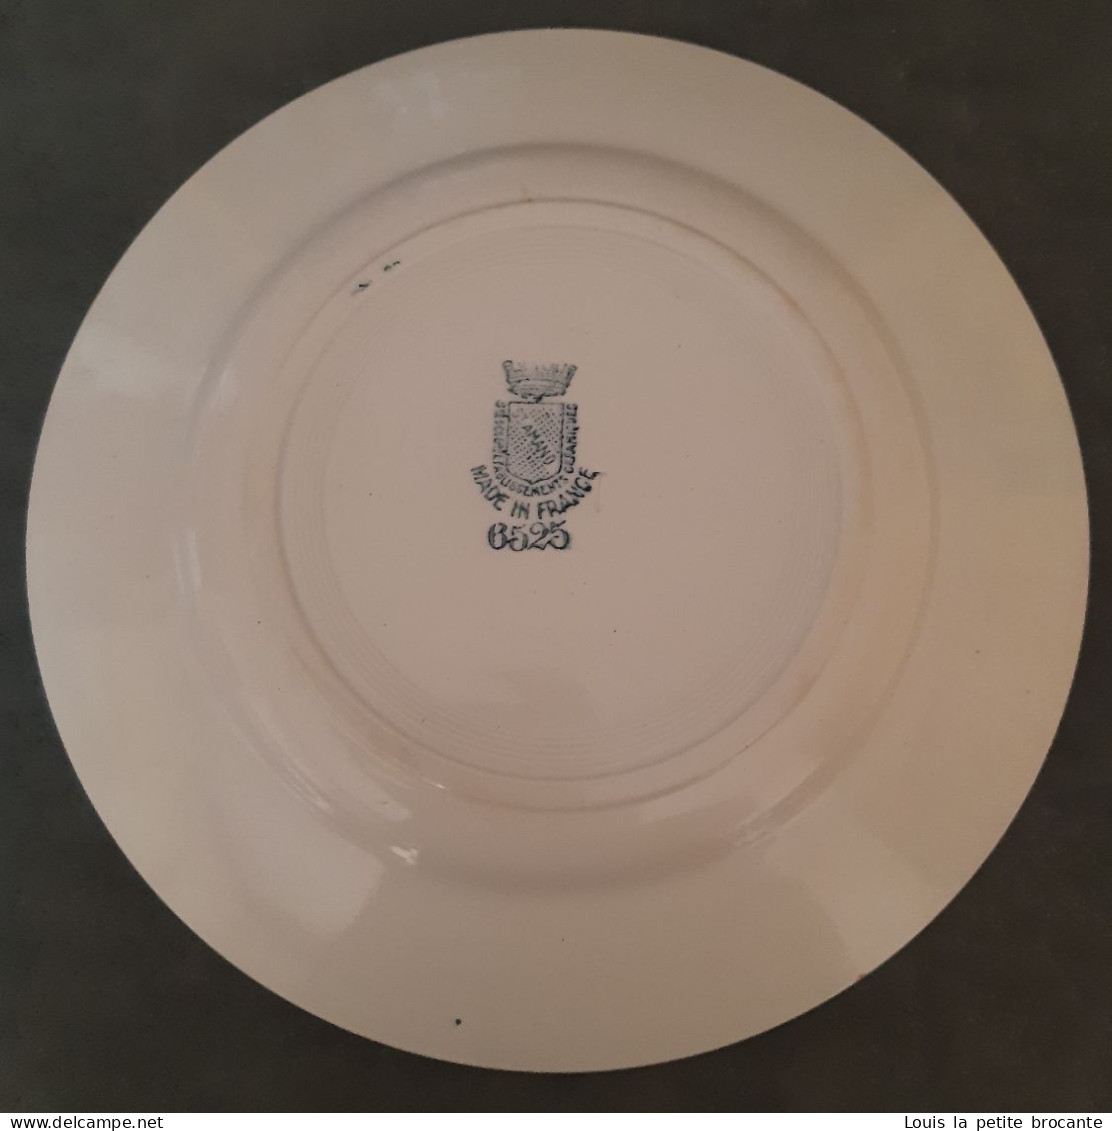 1 Assiette Plate Des Grands établissements Céramiques De ST AMAND, Modèle 6525,  Sans Numéro De Série (rare), - Borden